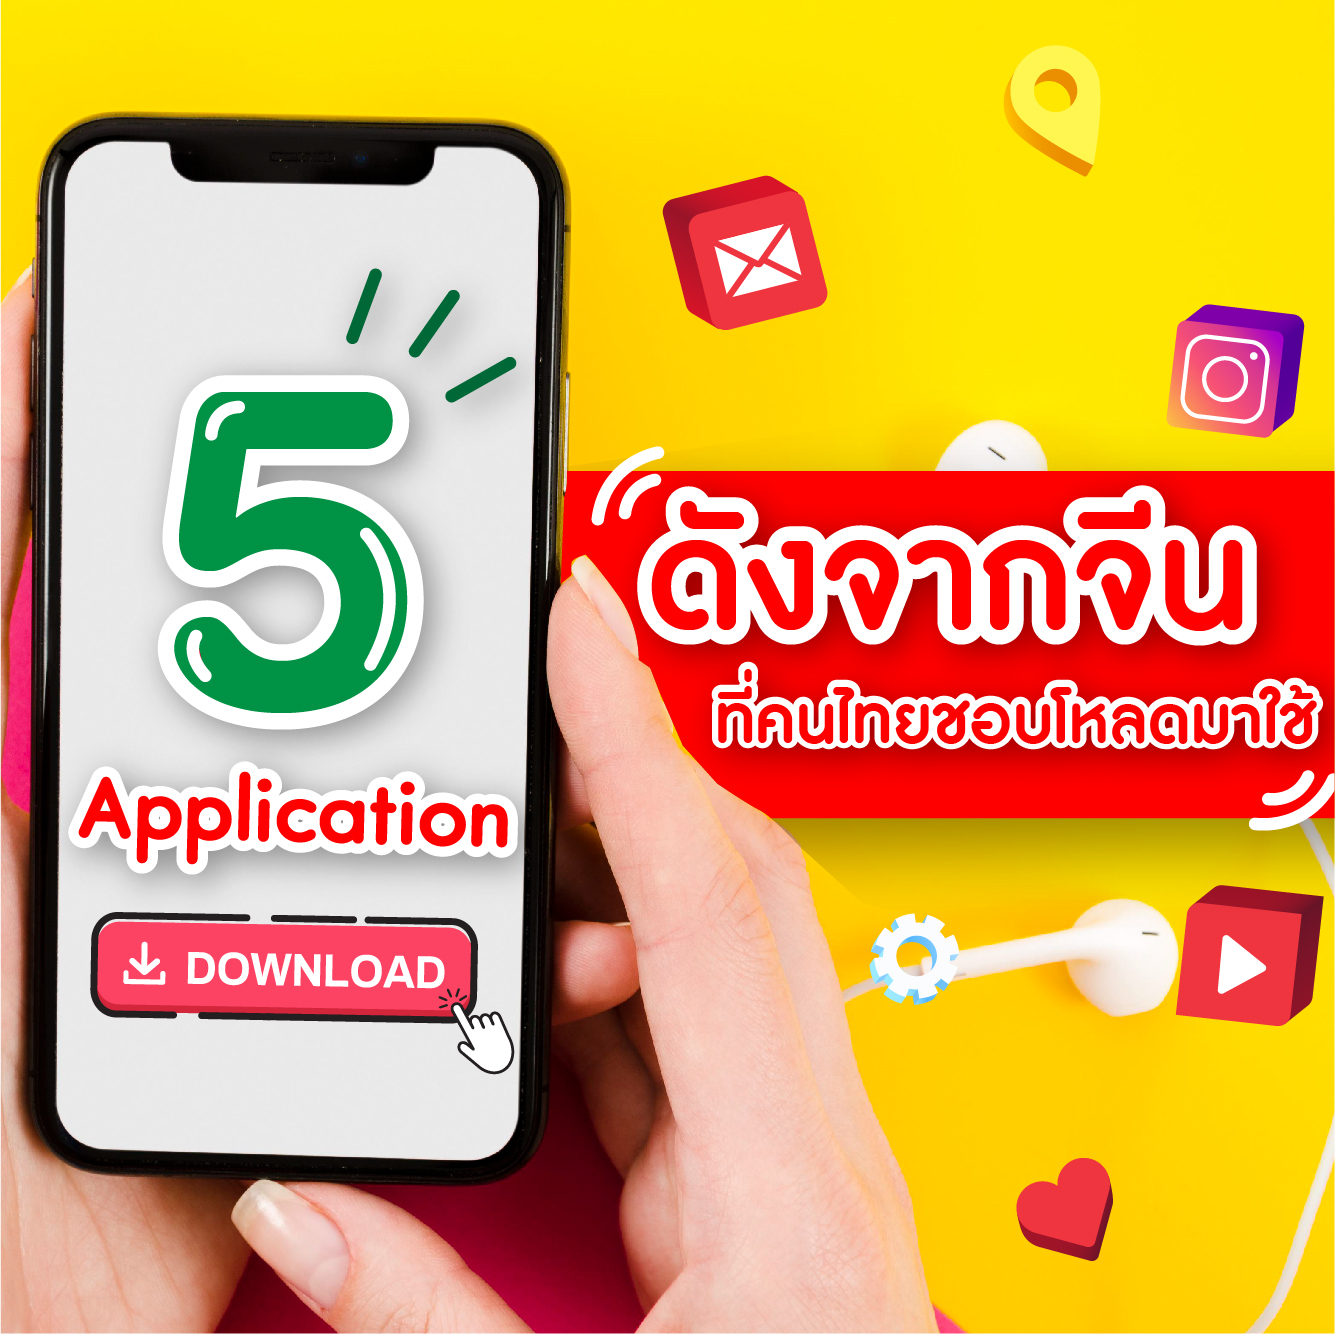 5 Application ดังจากจีนที่คนไทยชอบโหลดมาใช้